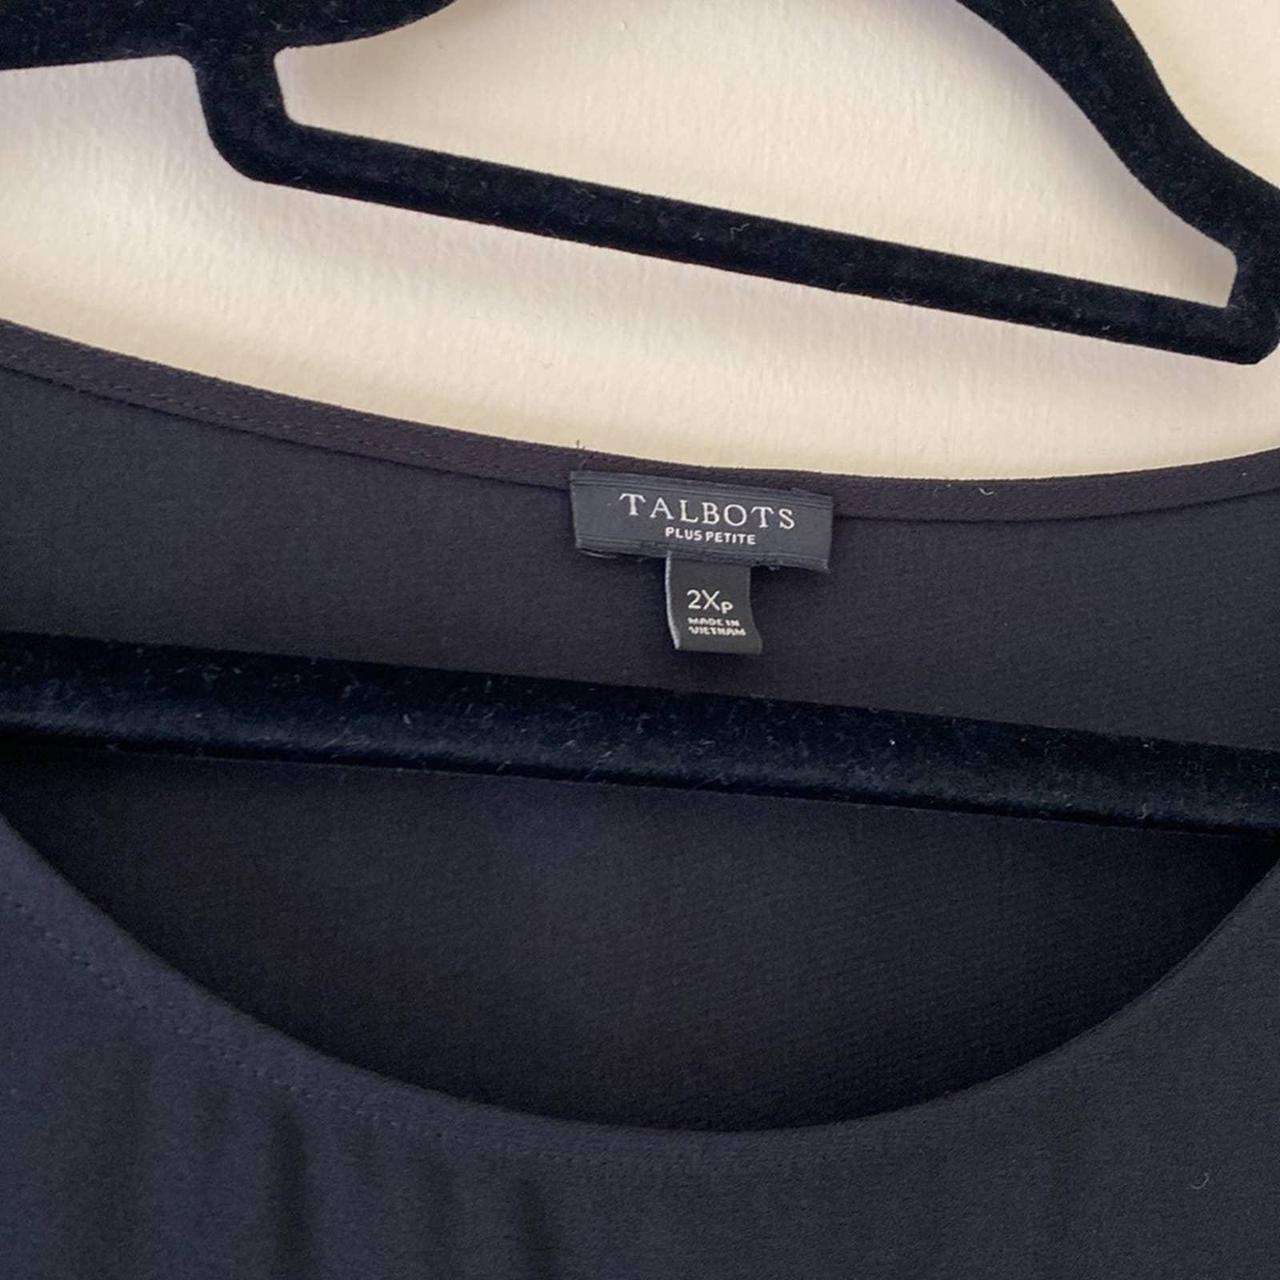 Talbots plus petites black top. Gently used. Bag - Depop